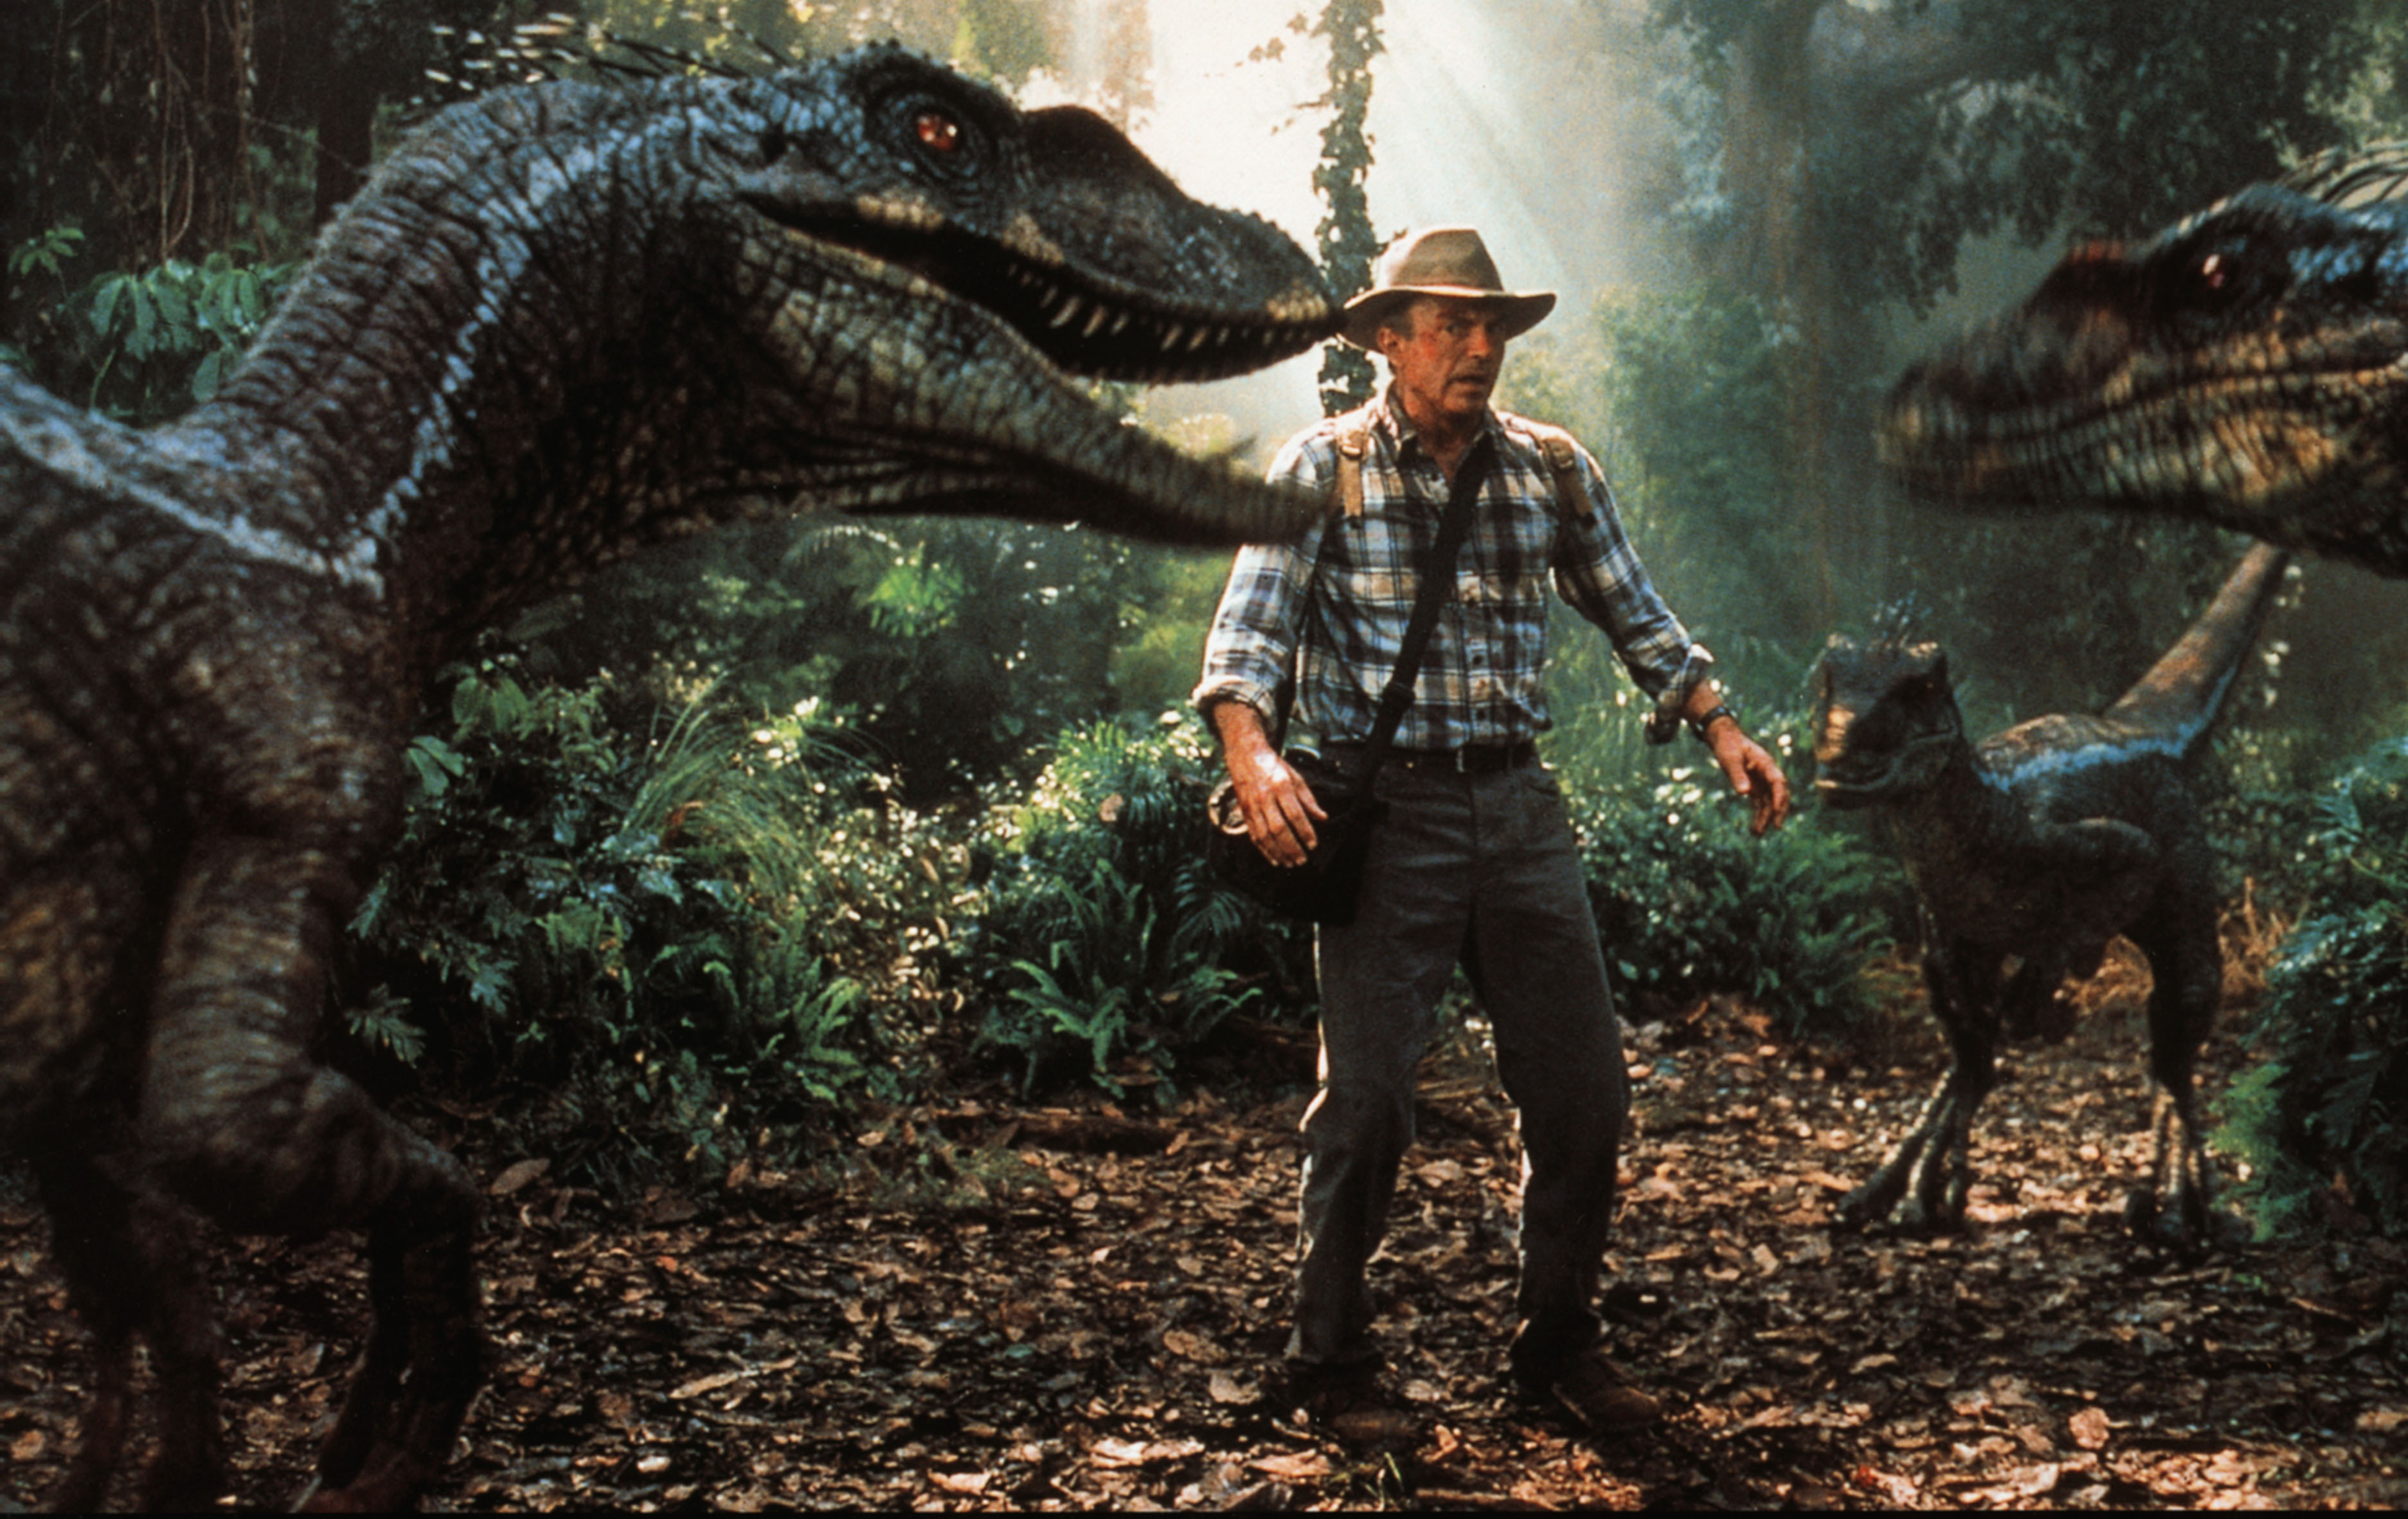 Завтра на улице вам встретится живой динозавр. Парк Юрского периода III» (2001). Уильям Мэйси парк Юрского периода.